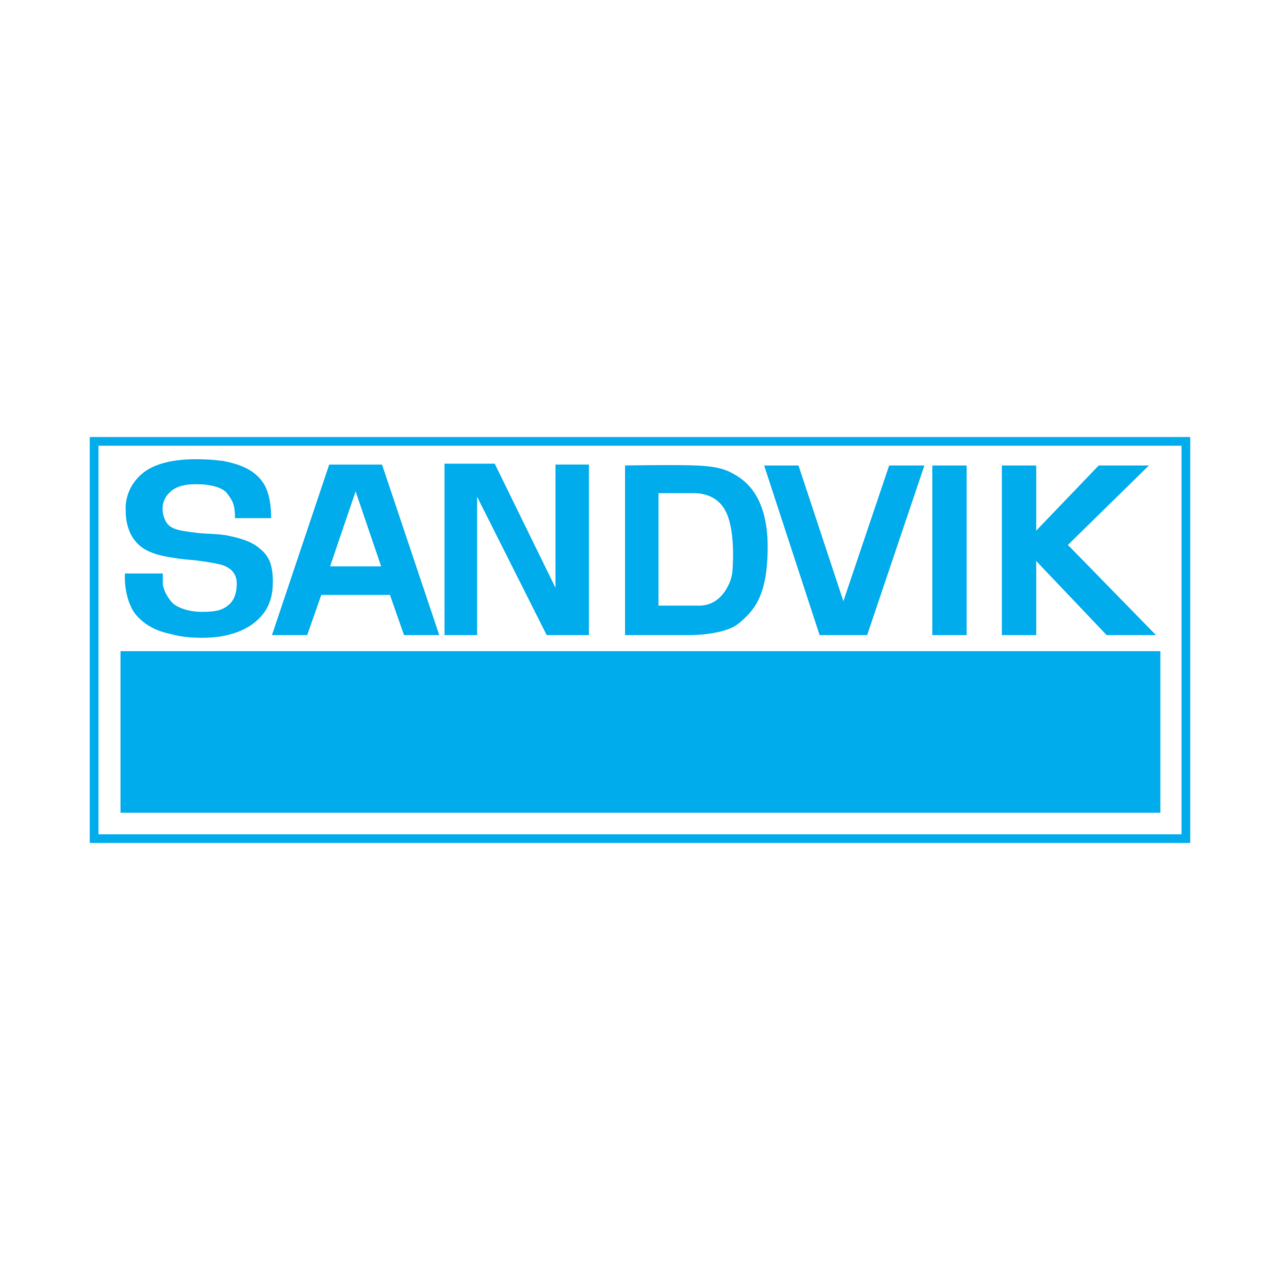 sandvik-logo